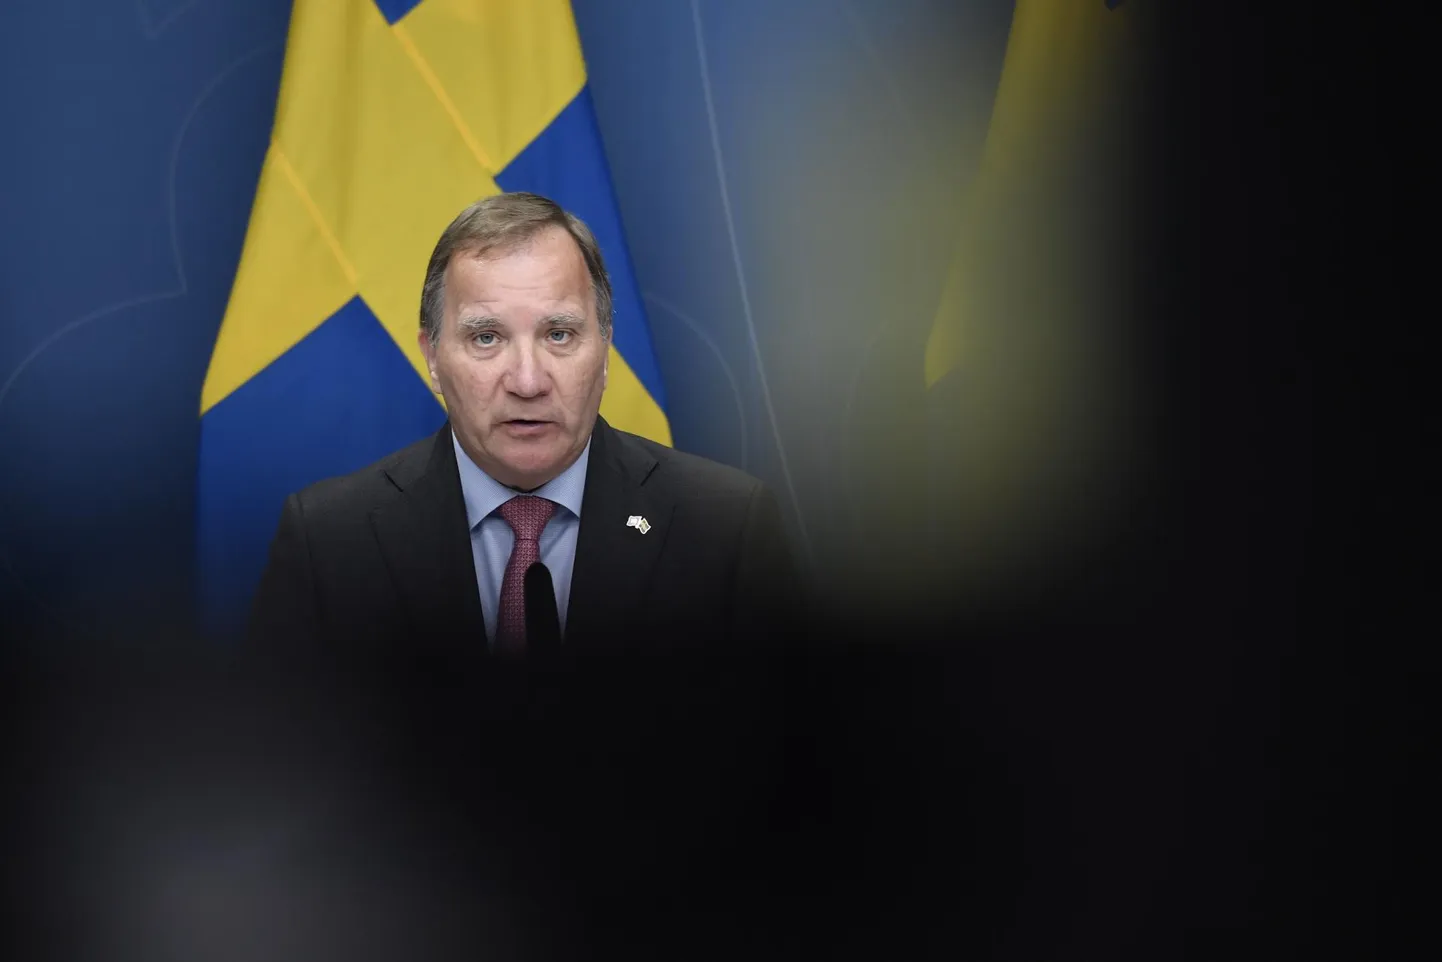 Rootsi peaminister Stefan Löfven teatas eilsel pressikonverentsil tagasi astumisest pärast umbusaldushääletuse kaotamist 21. juunil. Võimalusest kuulutada välja erakorralised valimised ta loobus, kuna ei pidanud õigeks hääletuse korraldamist keset pandeemiat vaid aasta enne korralisi valimisi.